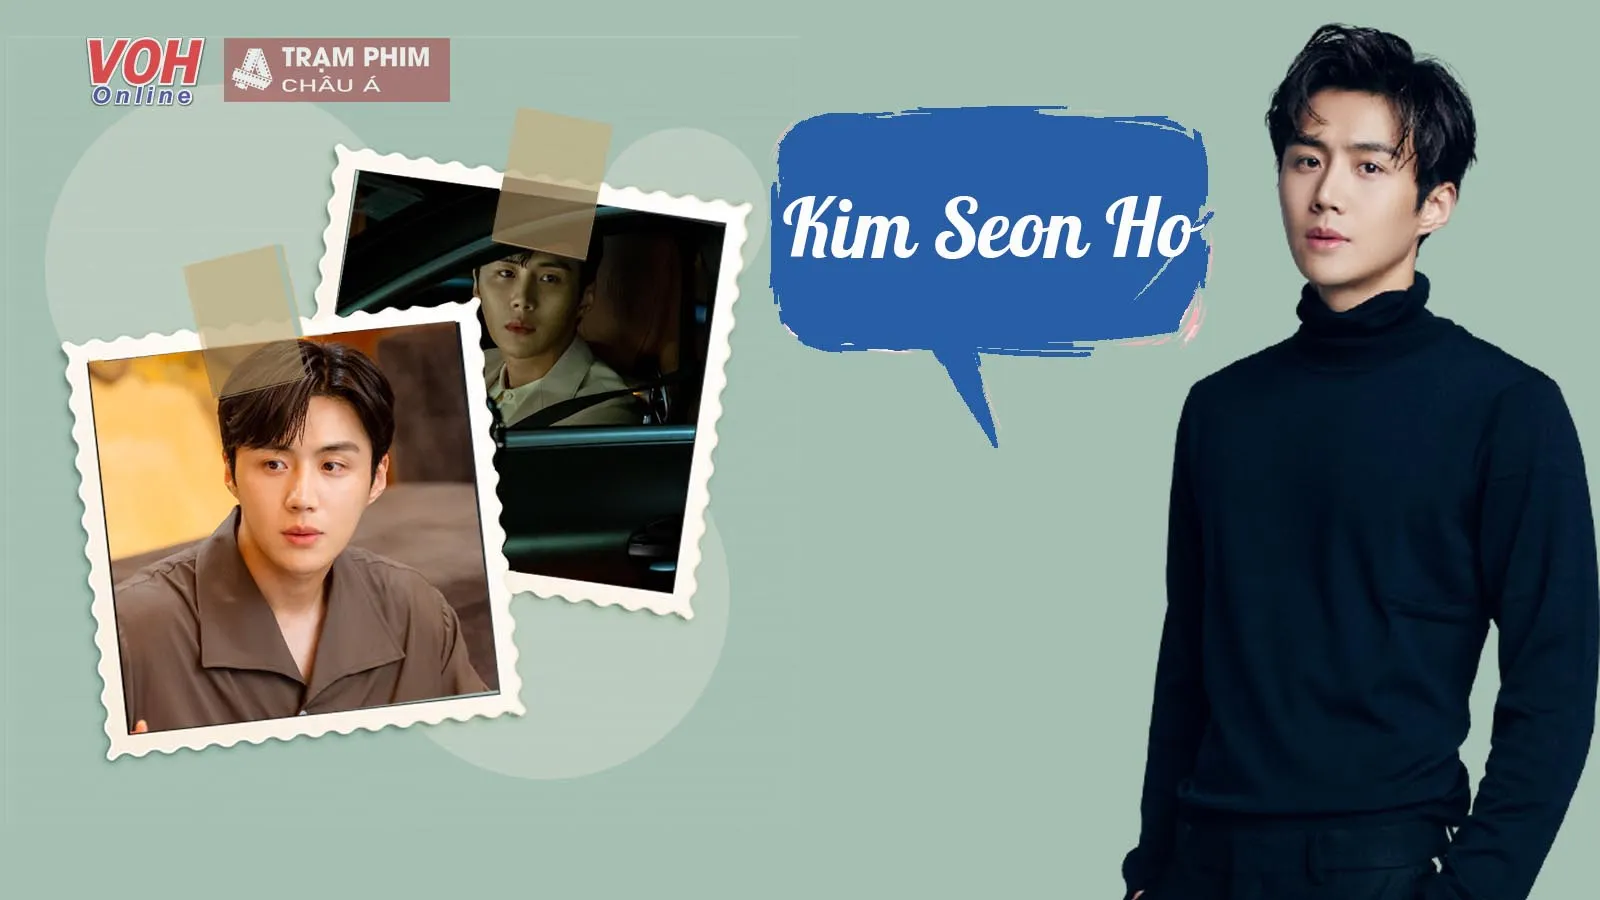 Tiểu sử Kim Seon Ho: Nam thần má lúm bùng nổ muộn ở tuổi 34